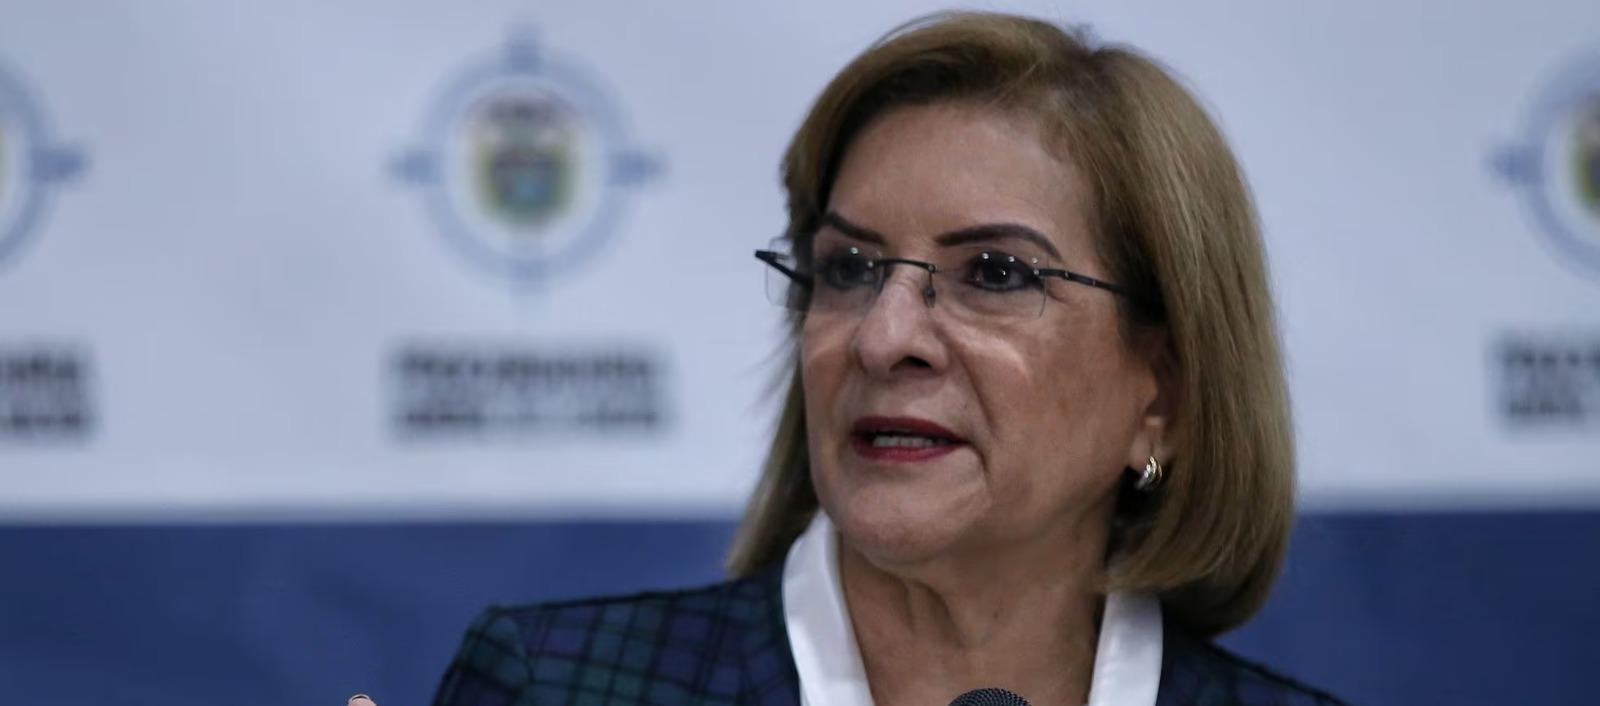 Margarita Cabello Blanco, Procuradora General de la Nación.